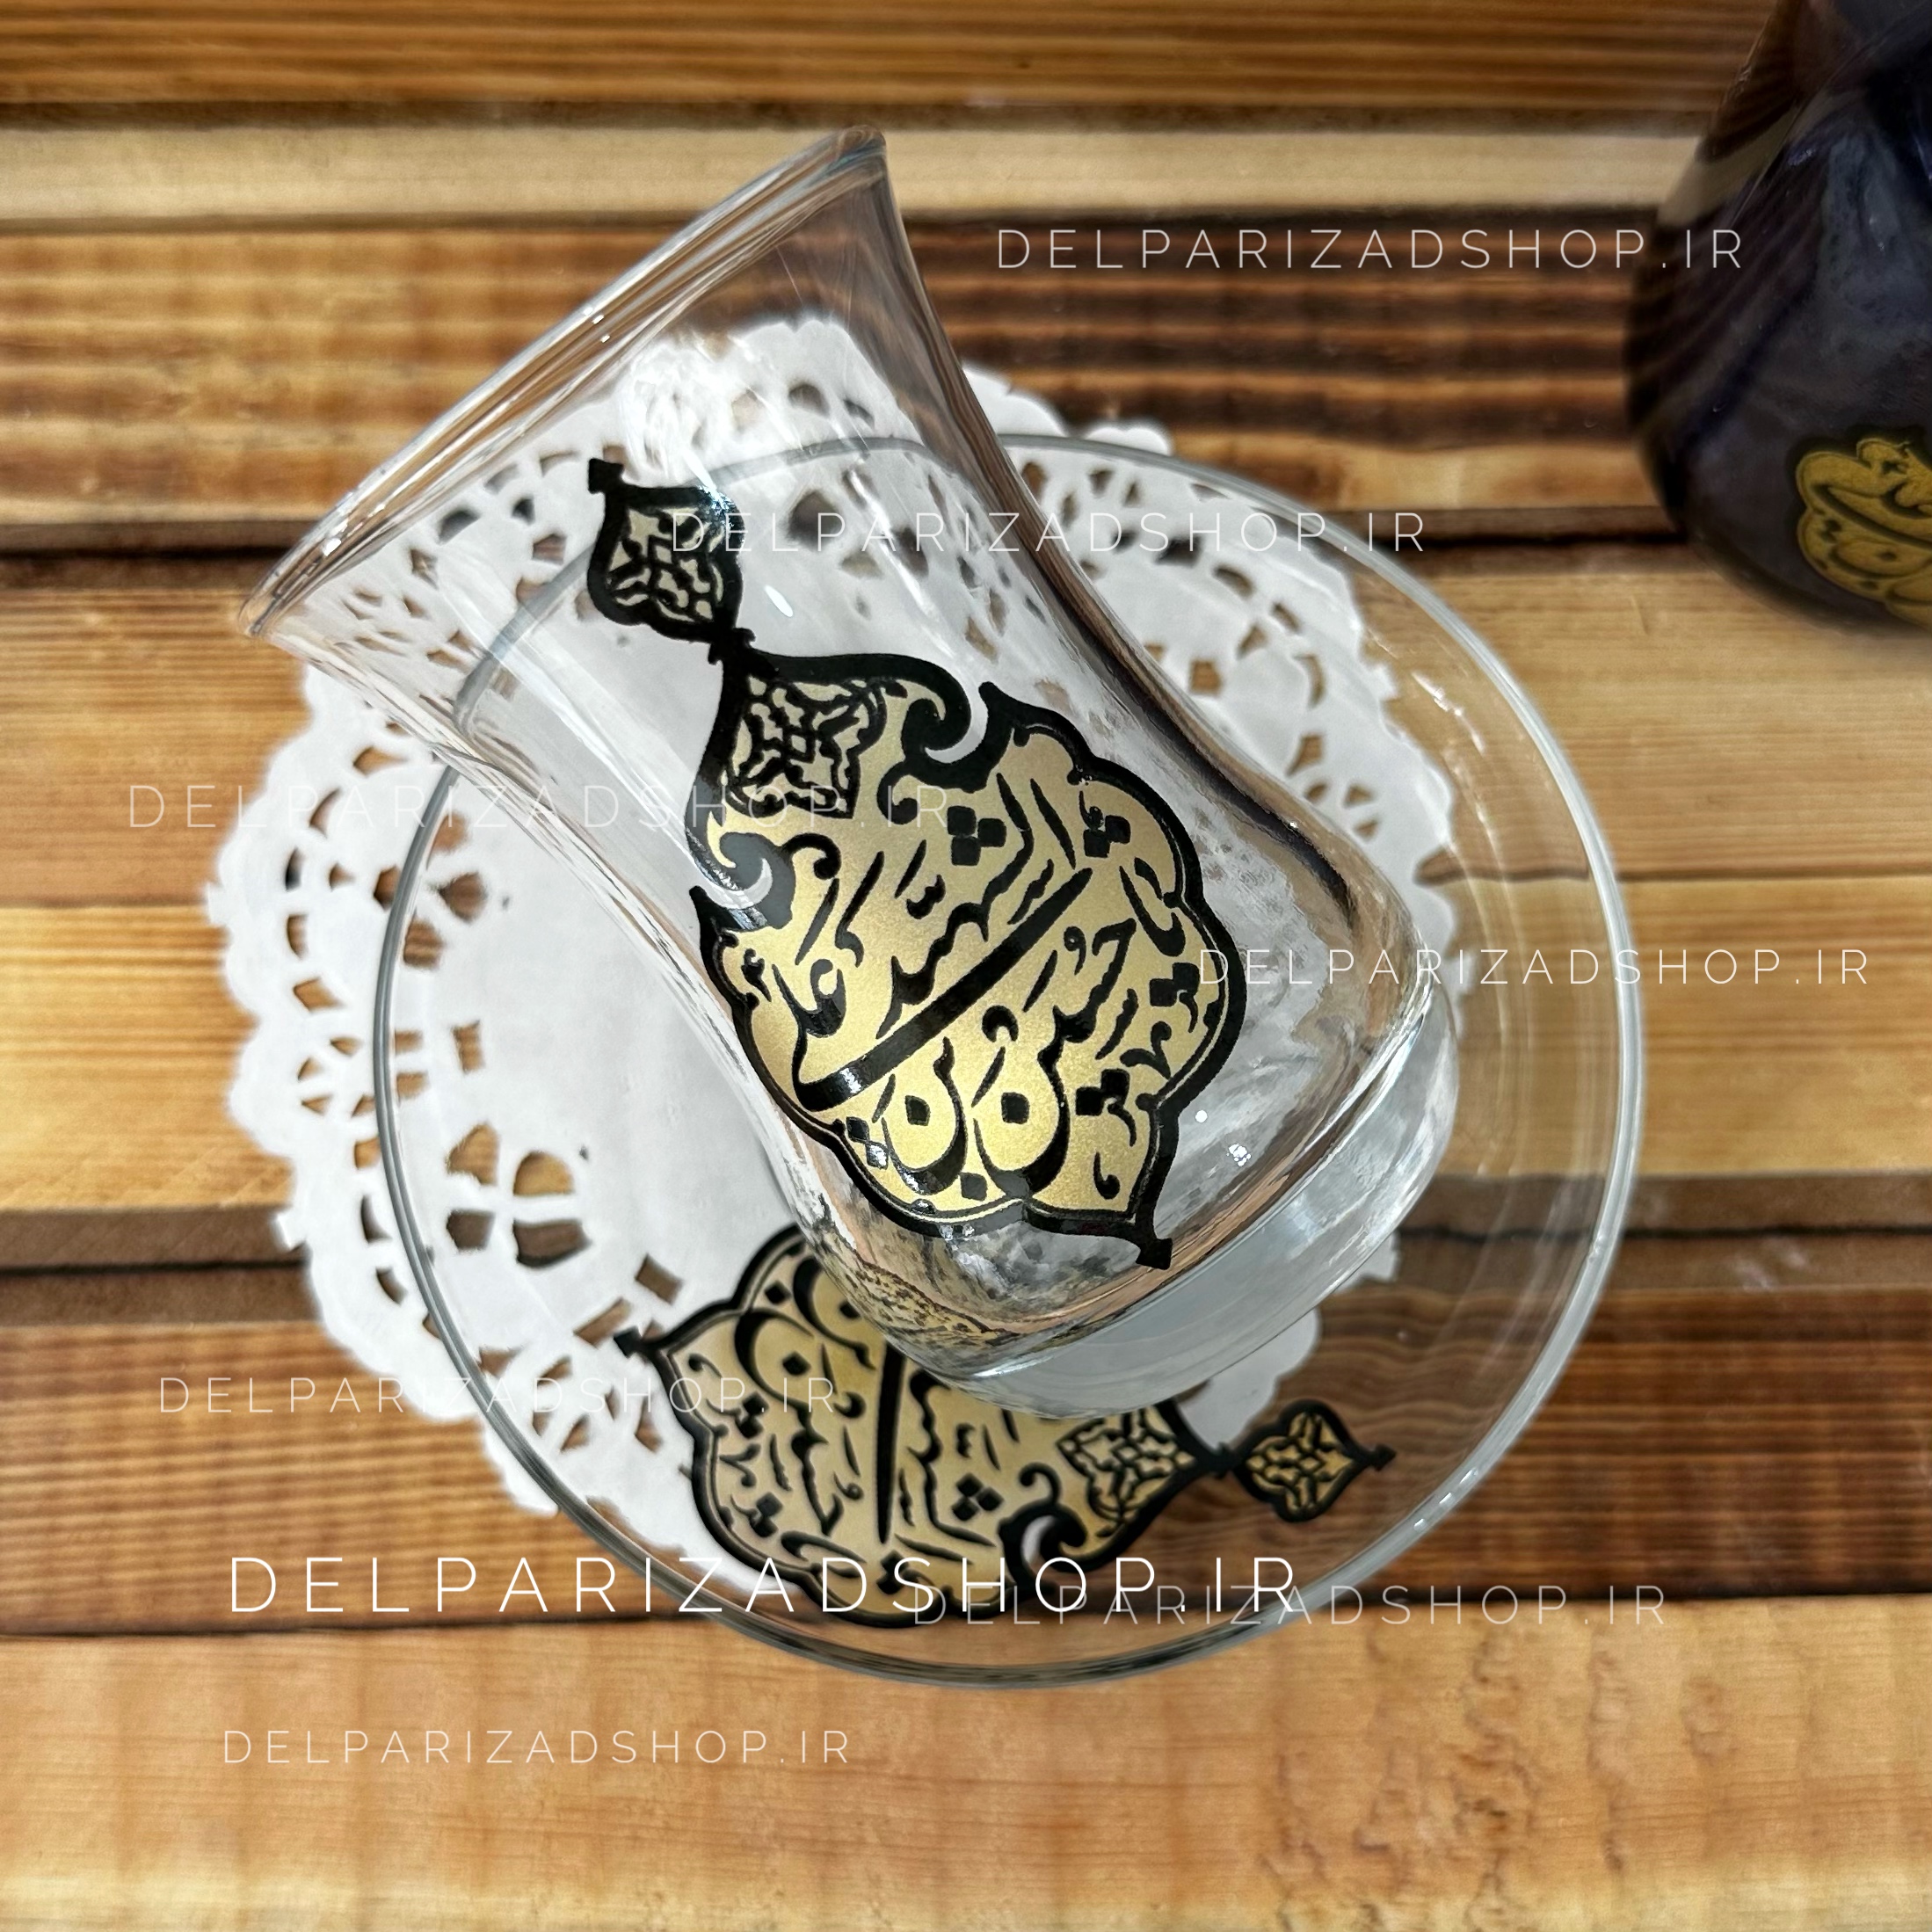 استکان و نعلبکی شیشه ای یک دست با نام یا حسین شهید (ع)